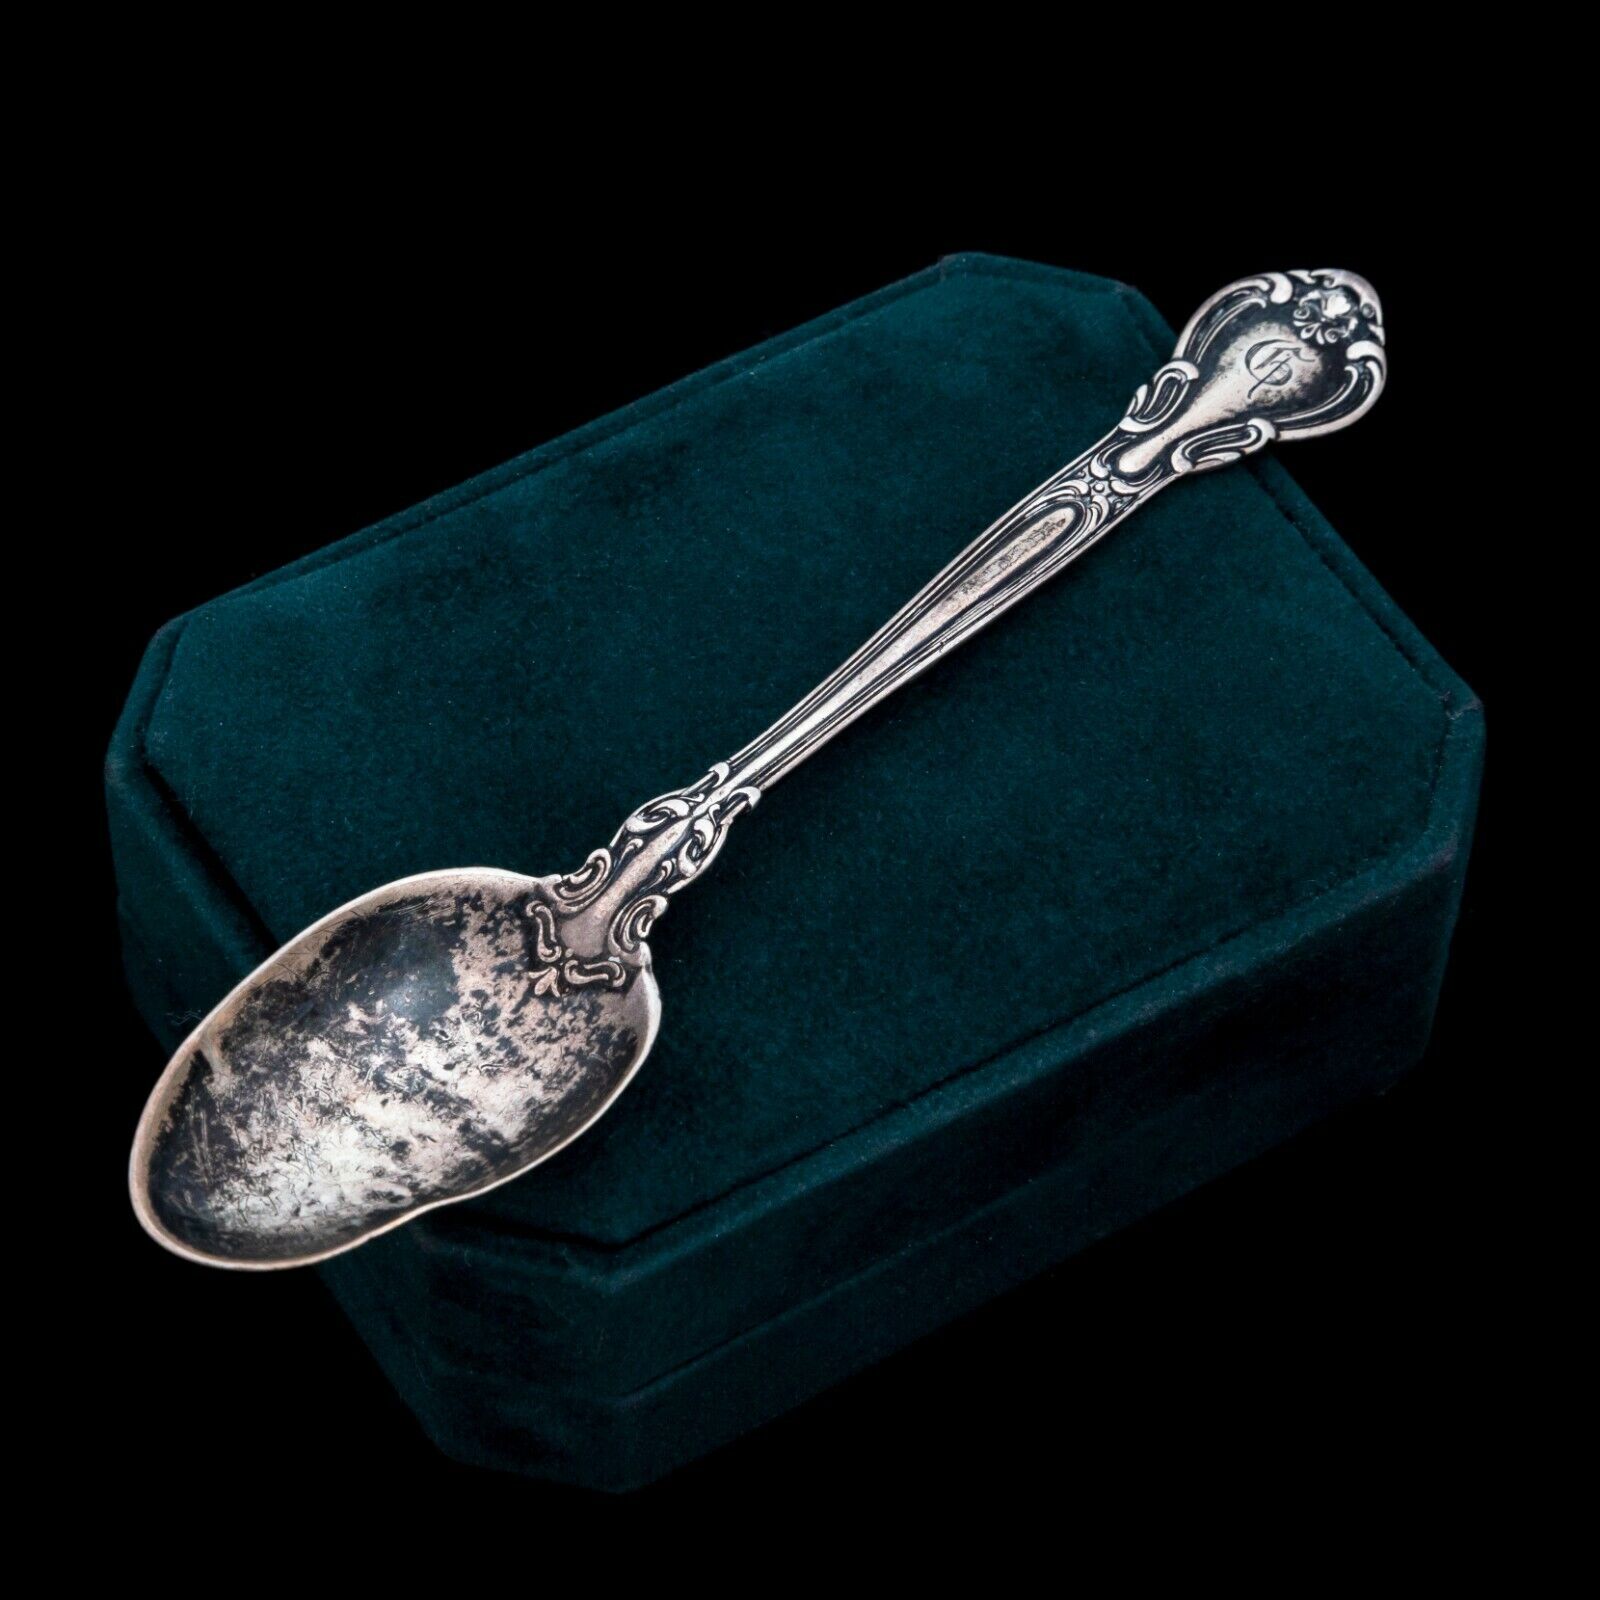 Antique Vintage Art Nouveau Sterling Silver GORHAM Jugendstil 1915 Spoon 16.3g